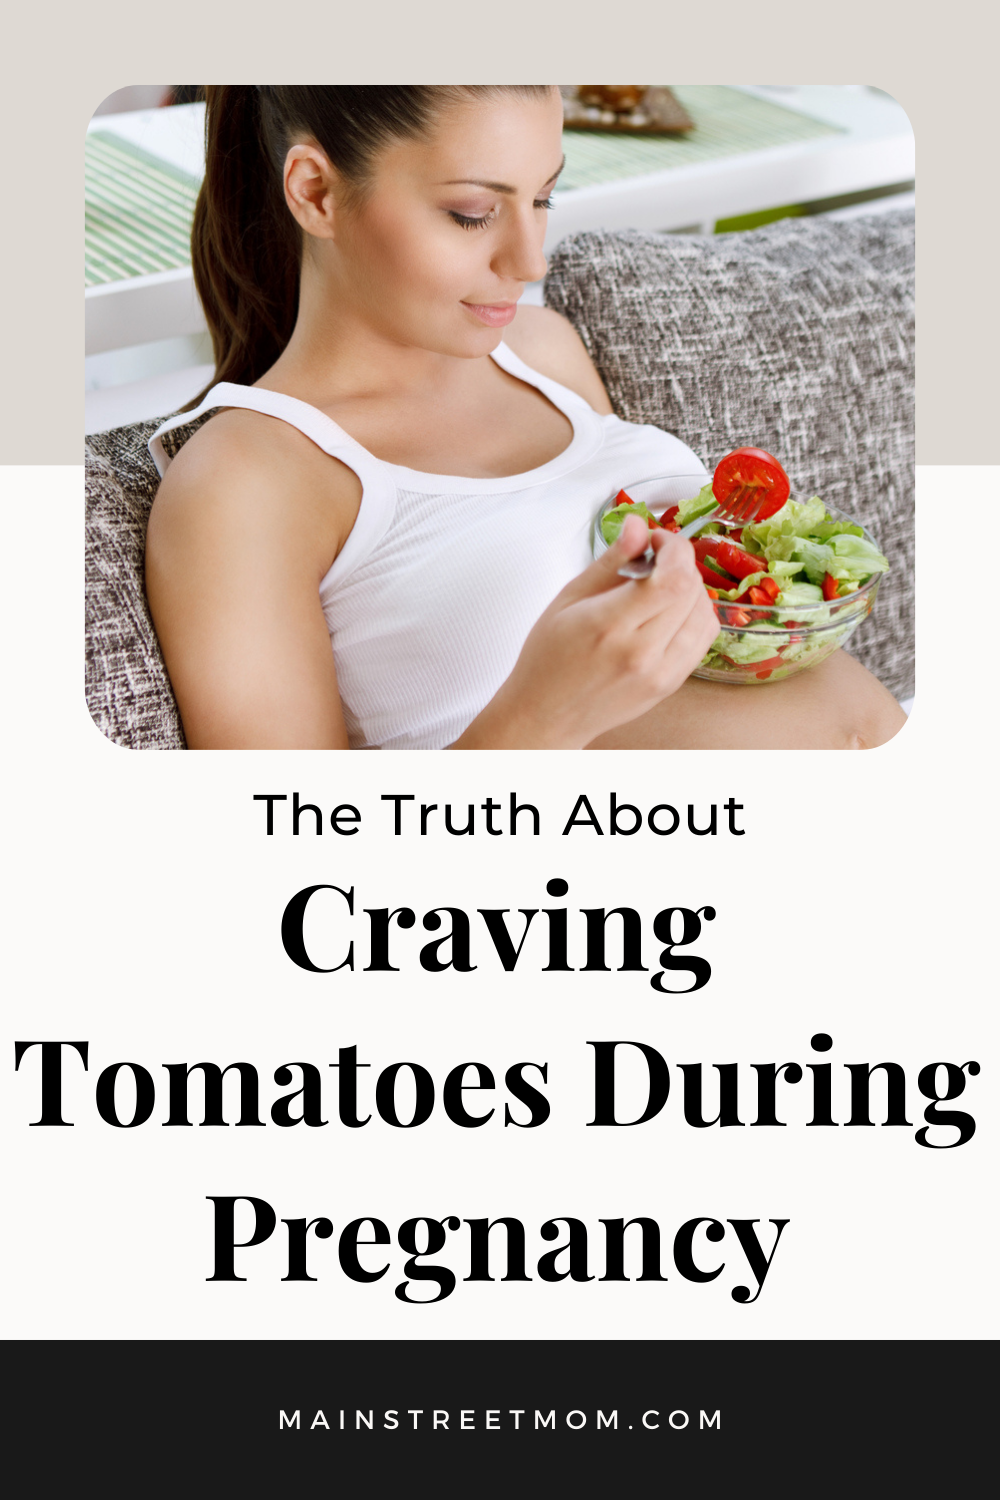 La verdad sobre los antojos de tomate durante el embarazo